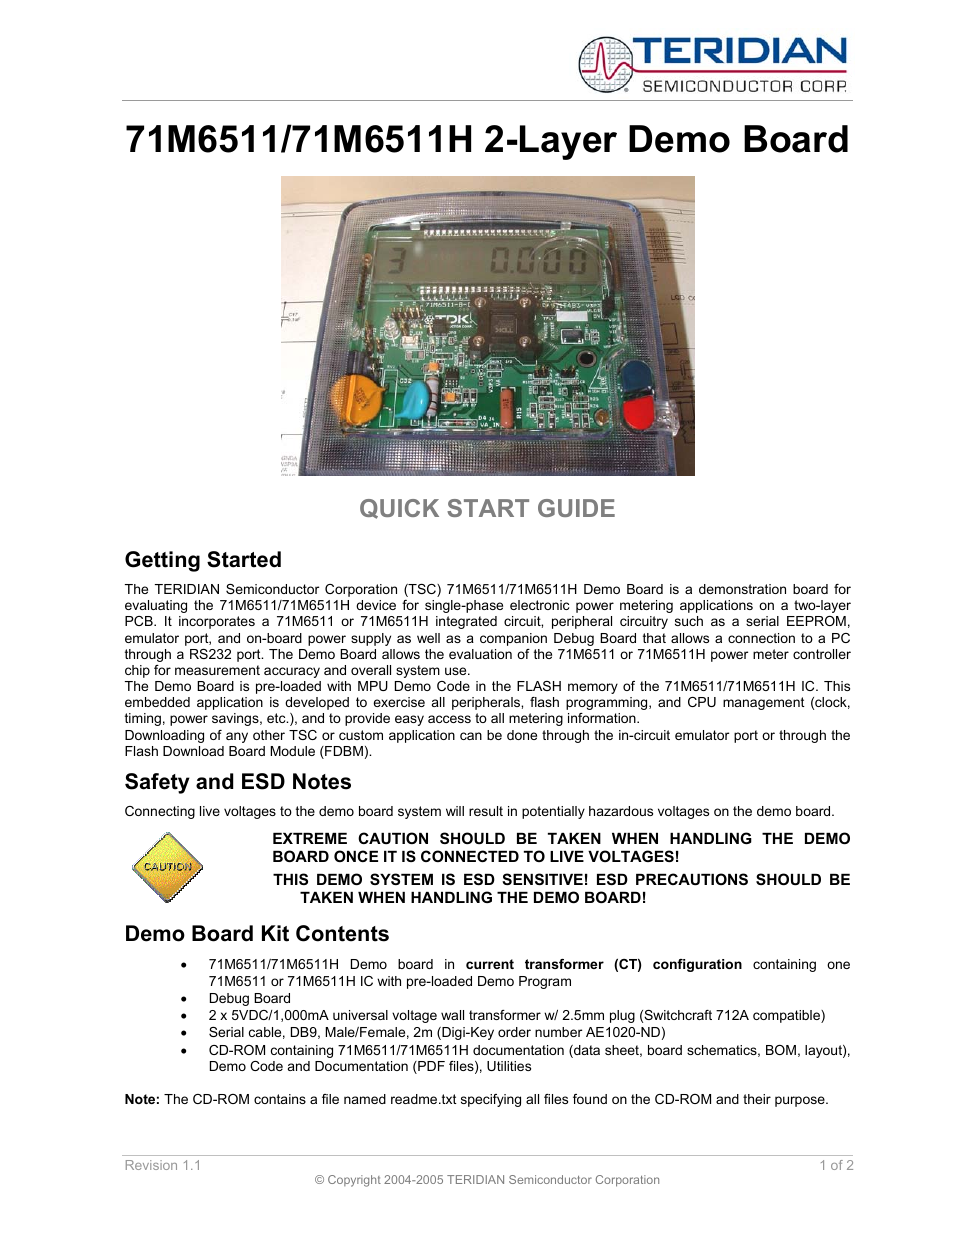 71M6511 2-Layer Demo Board